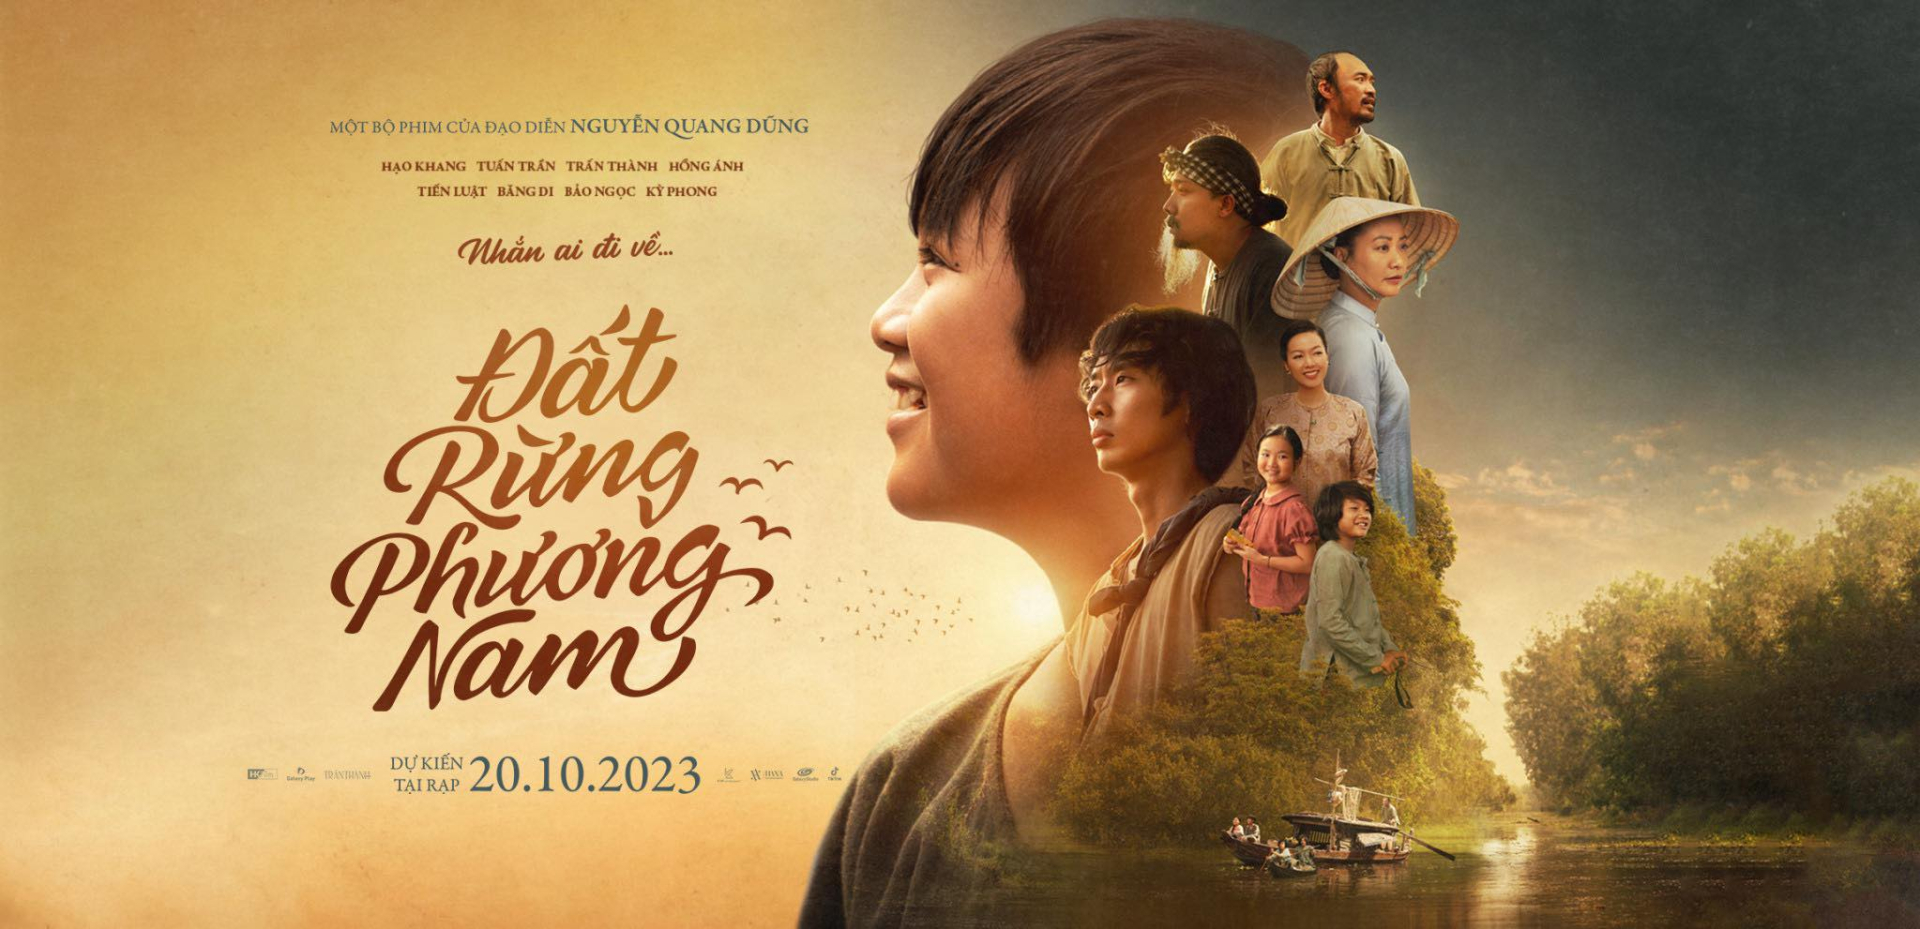 Đất Rừng Phương Nam là một trong những phim được mong đợi nhất của điện ảnh Việt Nam trong năm 2023.